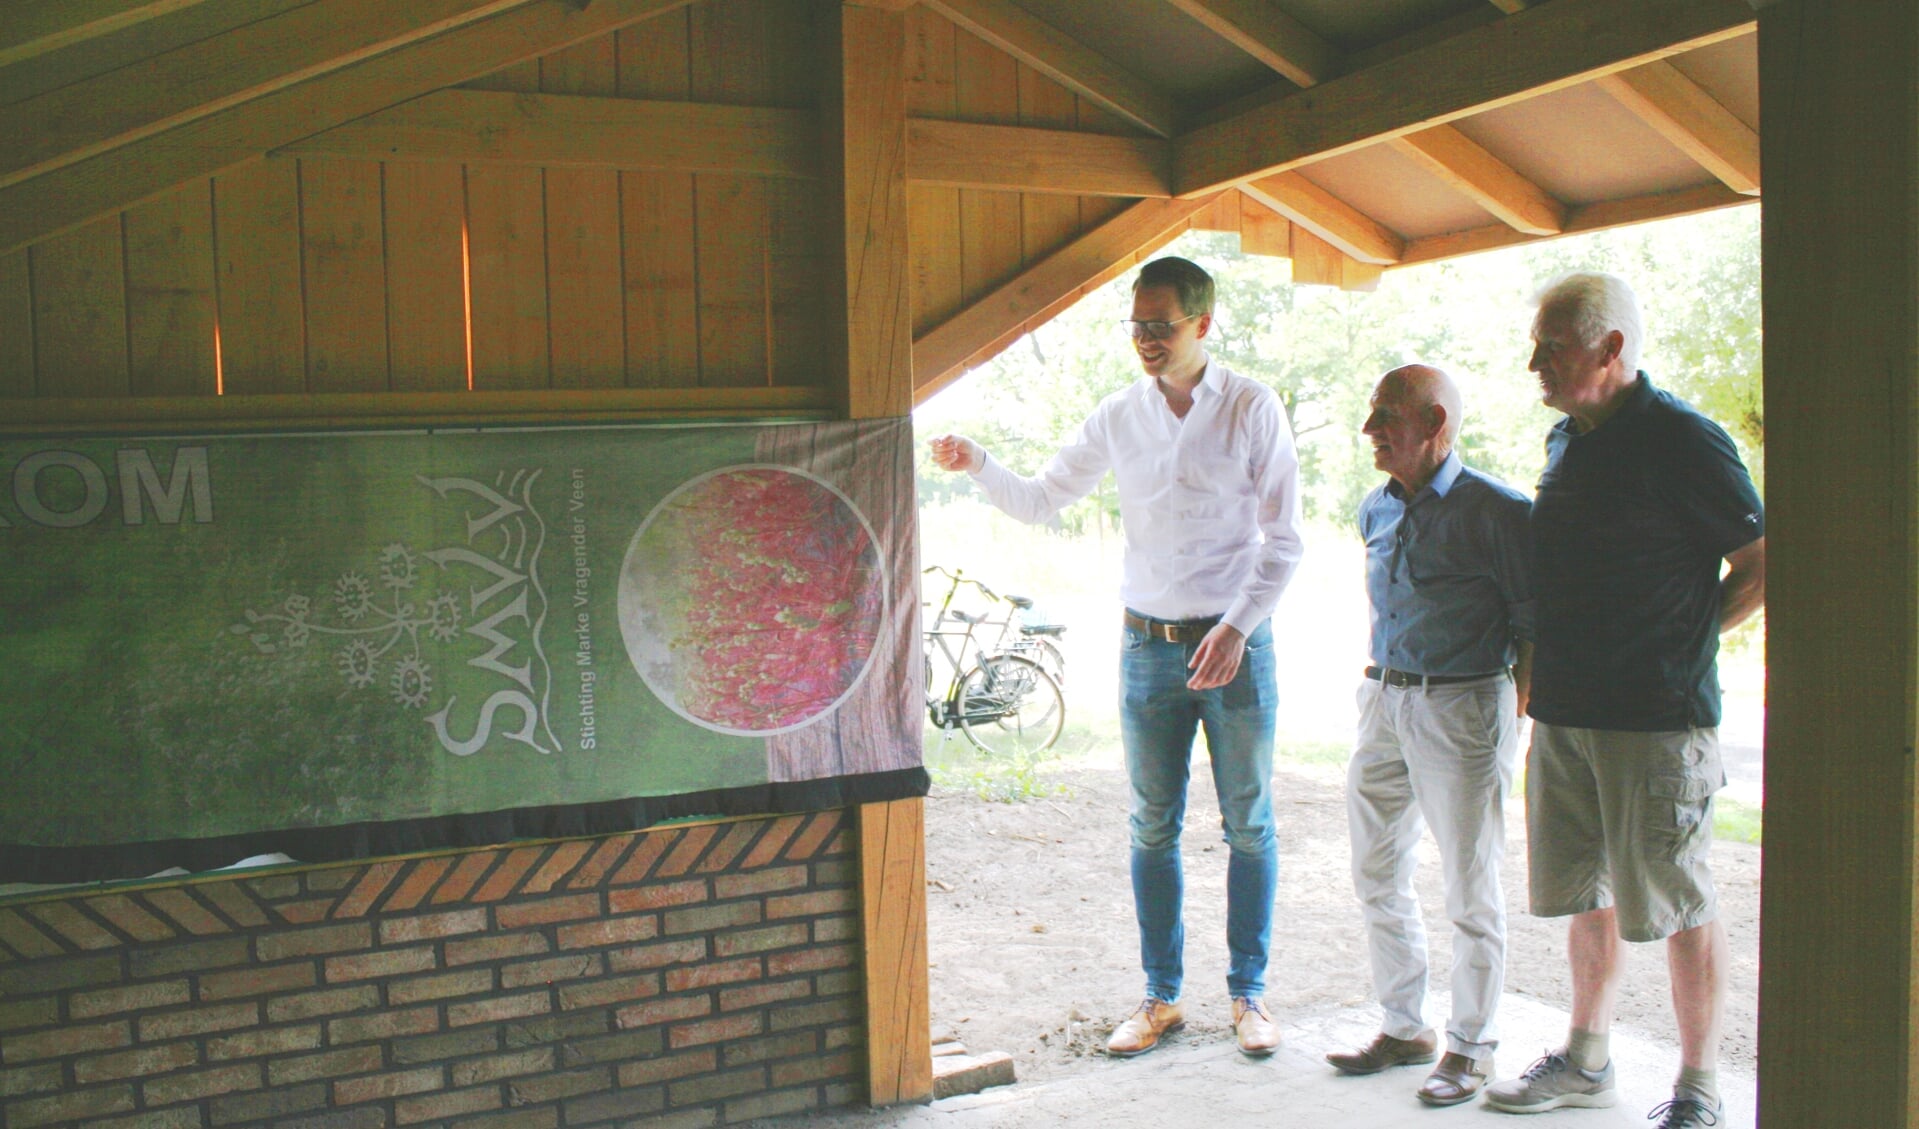 Wethouder Porskamp onthult bij wijze van opening het informatiebord in de schuilhut 'Kerkdijk'. Foto: Dinès Quist